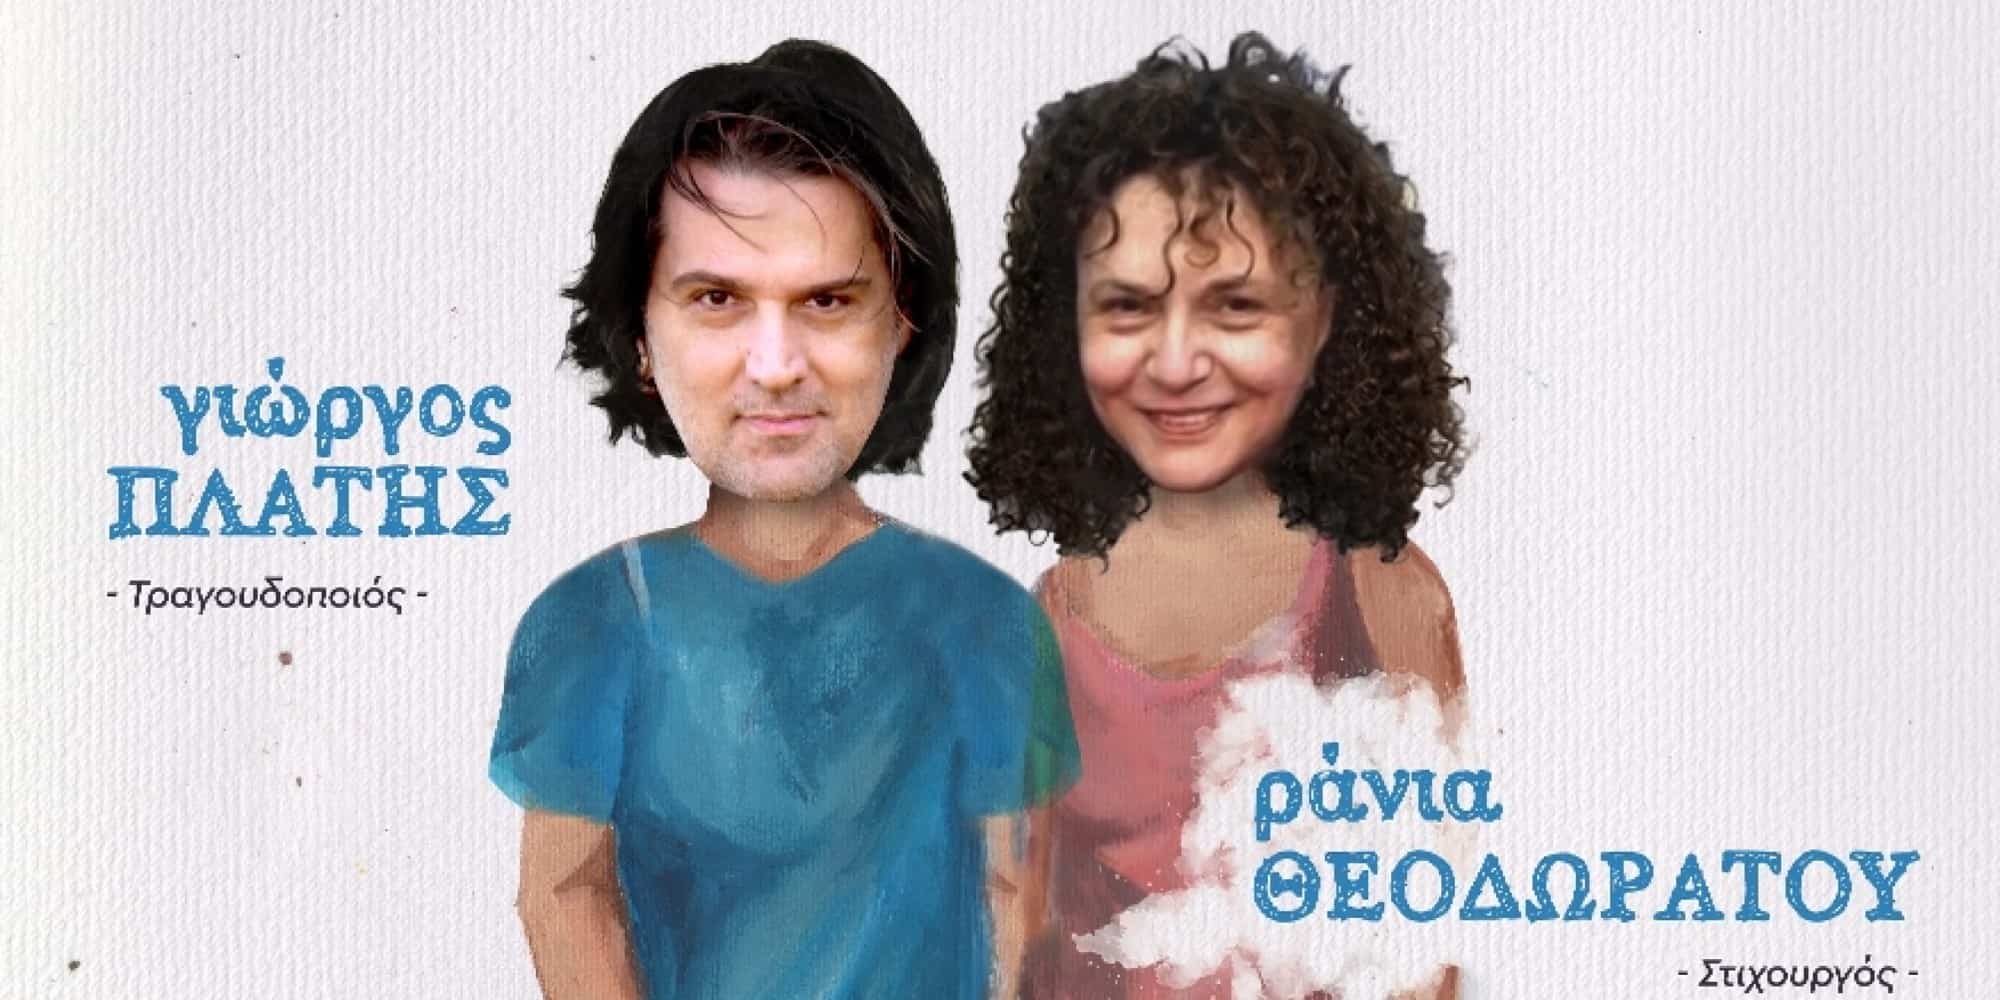 Ο Γιώργος Πλατής και η Ράνια Θεοδωράτου στο «Cine» στην Άνω Ηλιούπολη